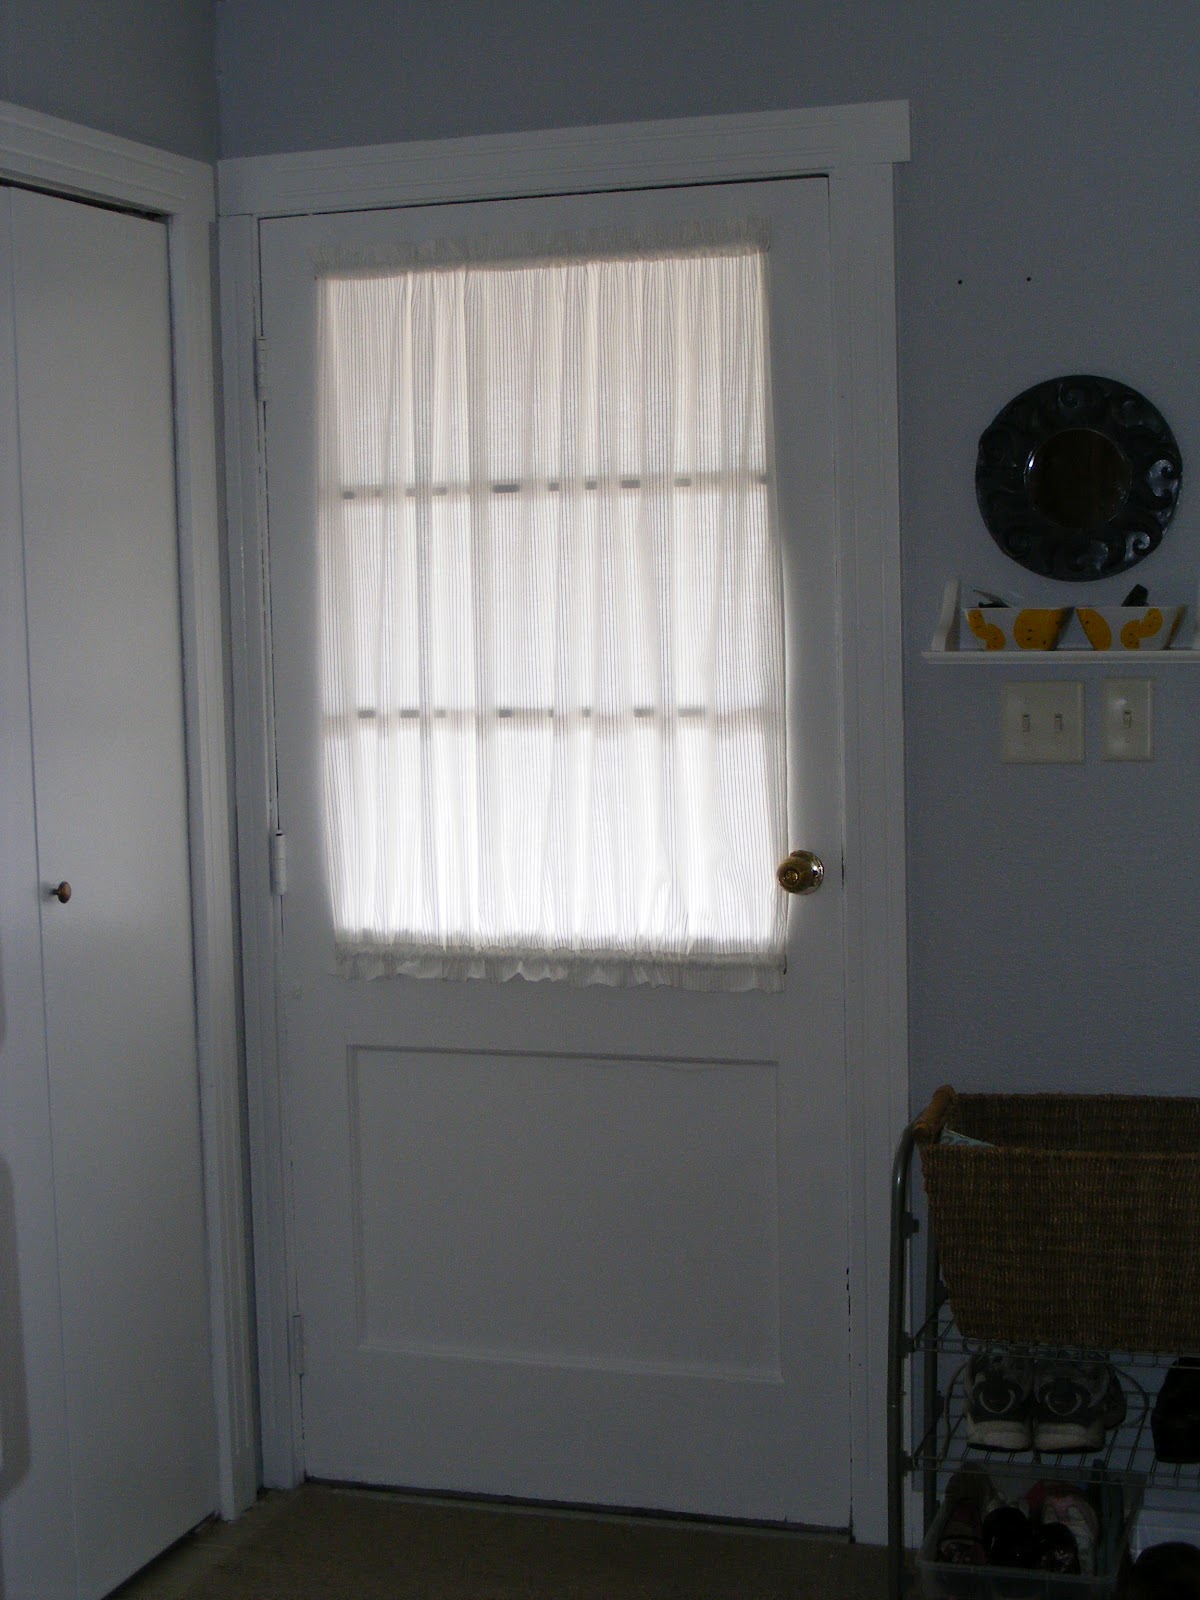 Curtain For Door With Half Window 